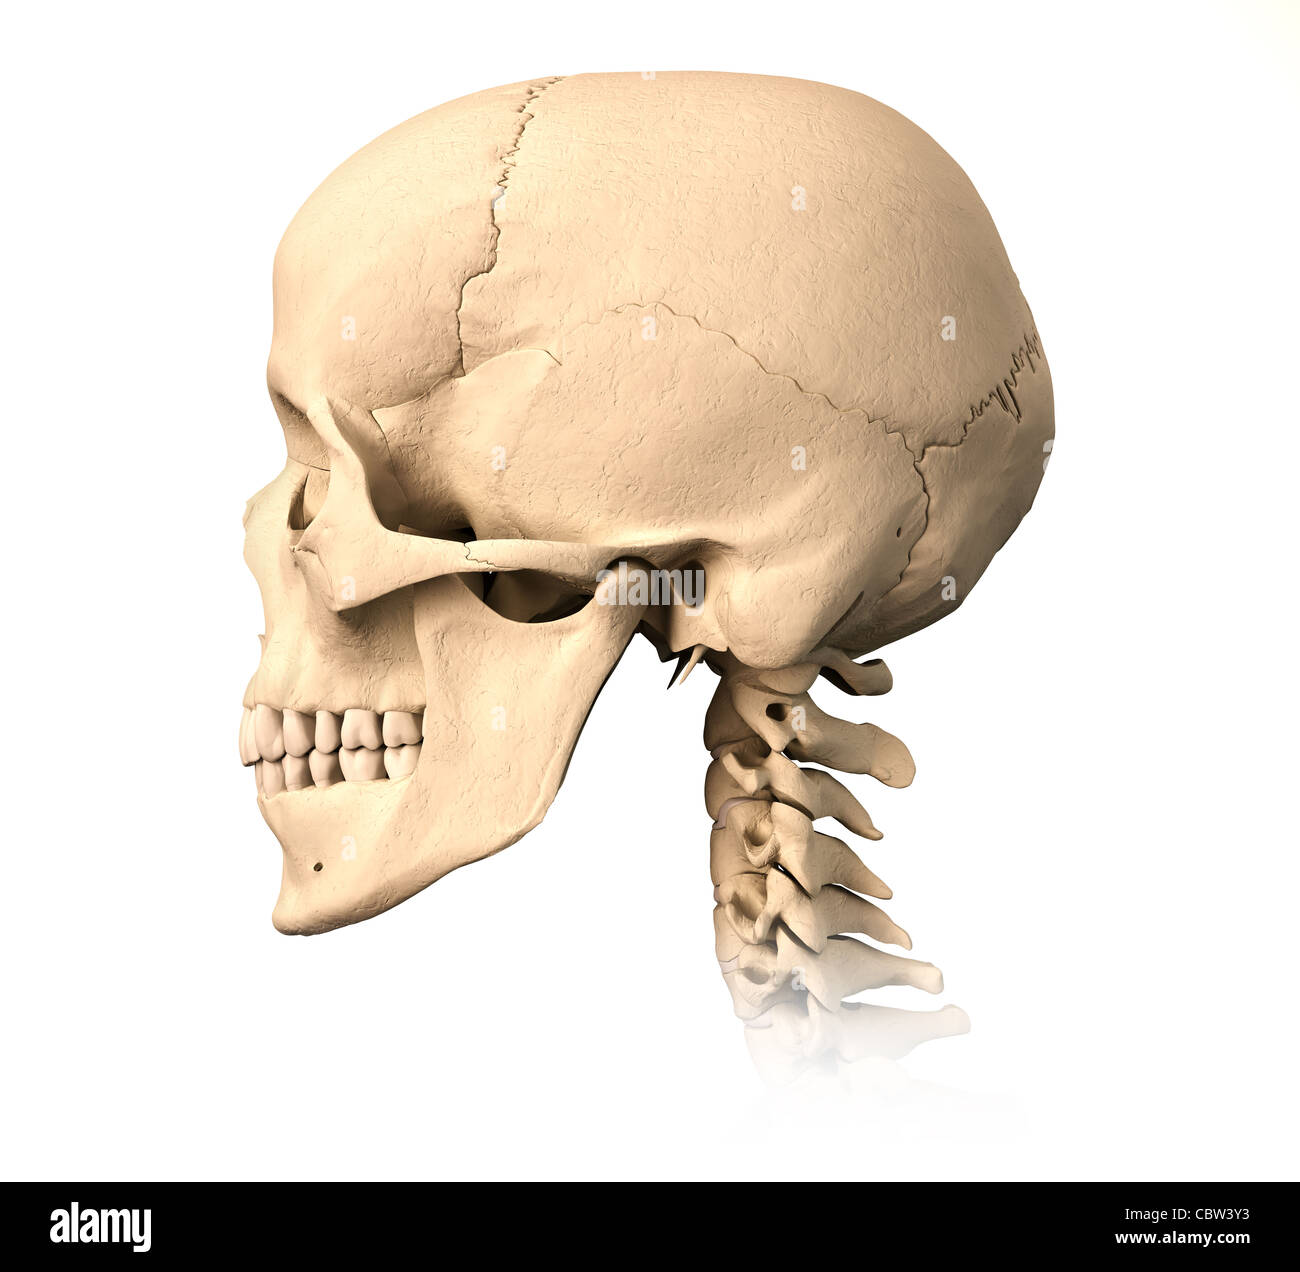 Très détaillé et scientifiquement correctes crâne humain. Vue latérale, sur fond blanc. Anatomie de l'image. Banque D'Images